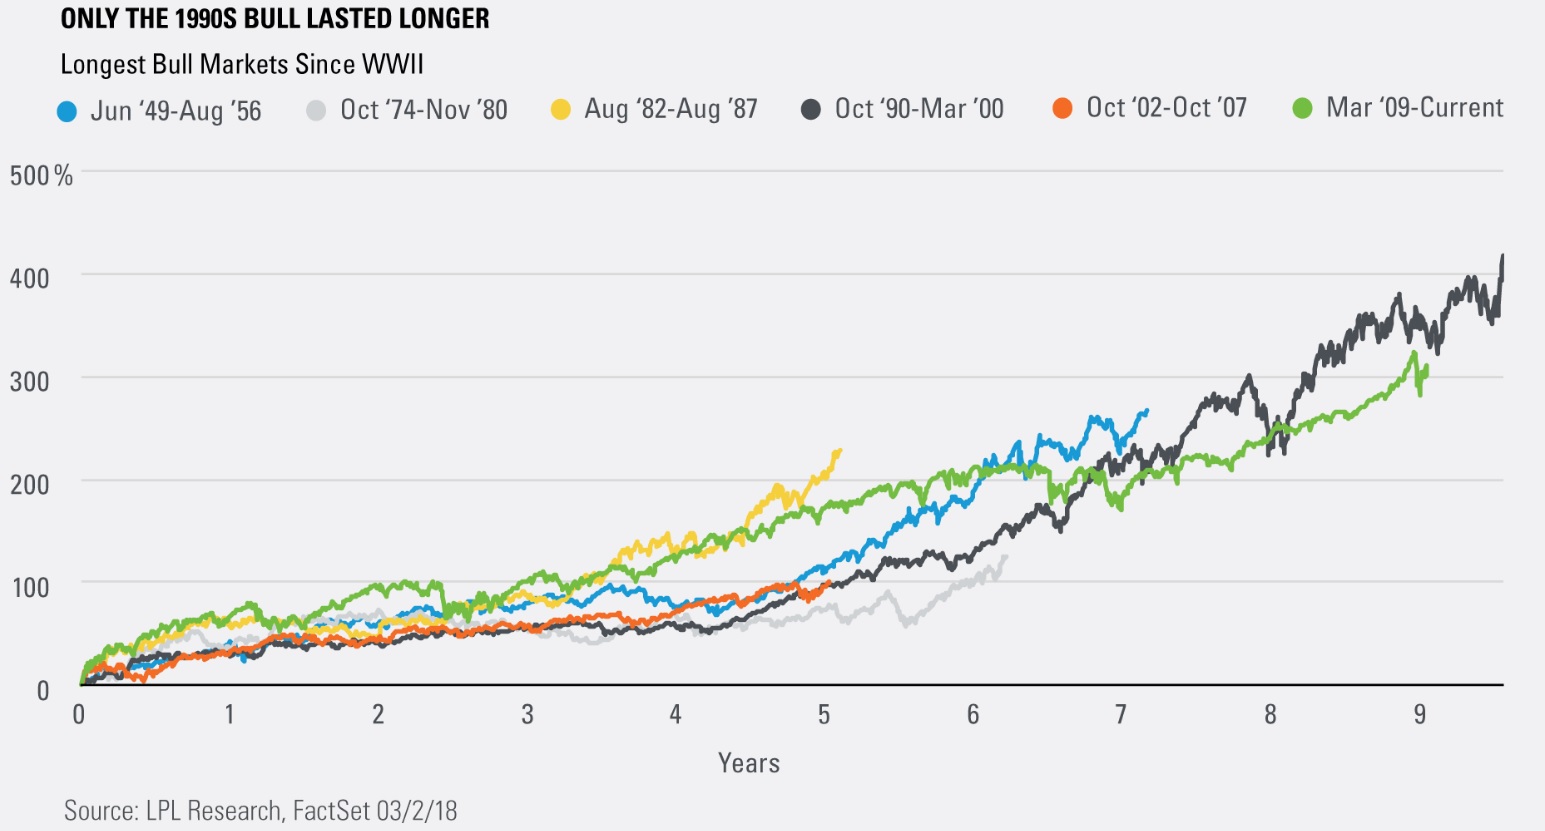 Longest Bull Markets Since WWII